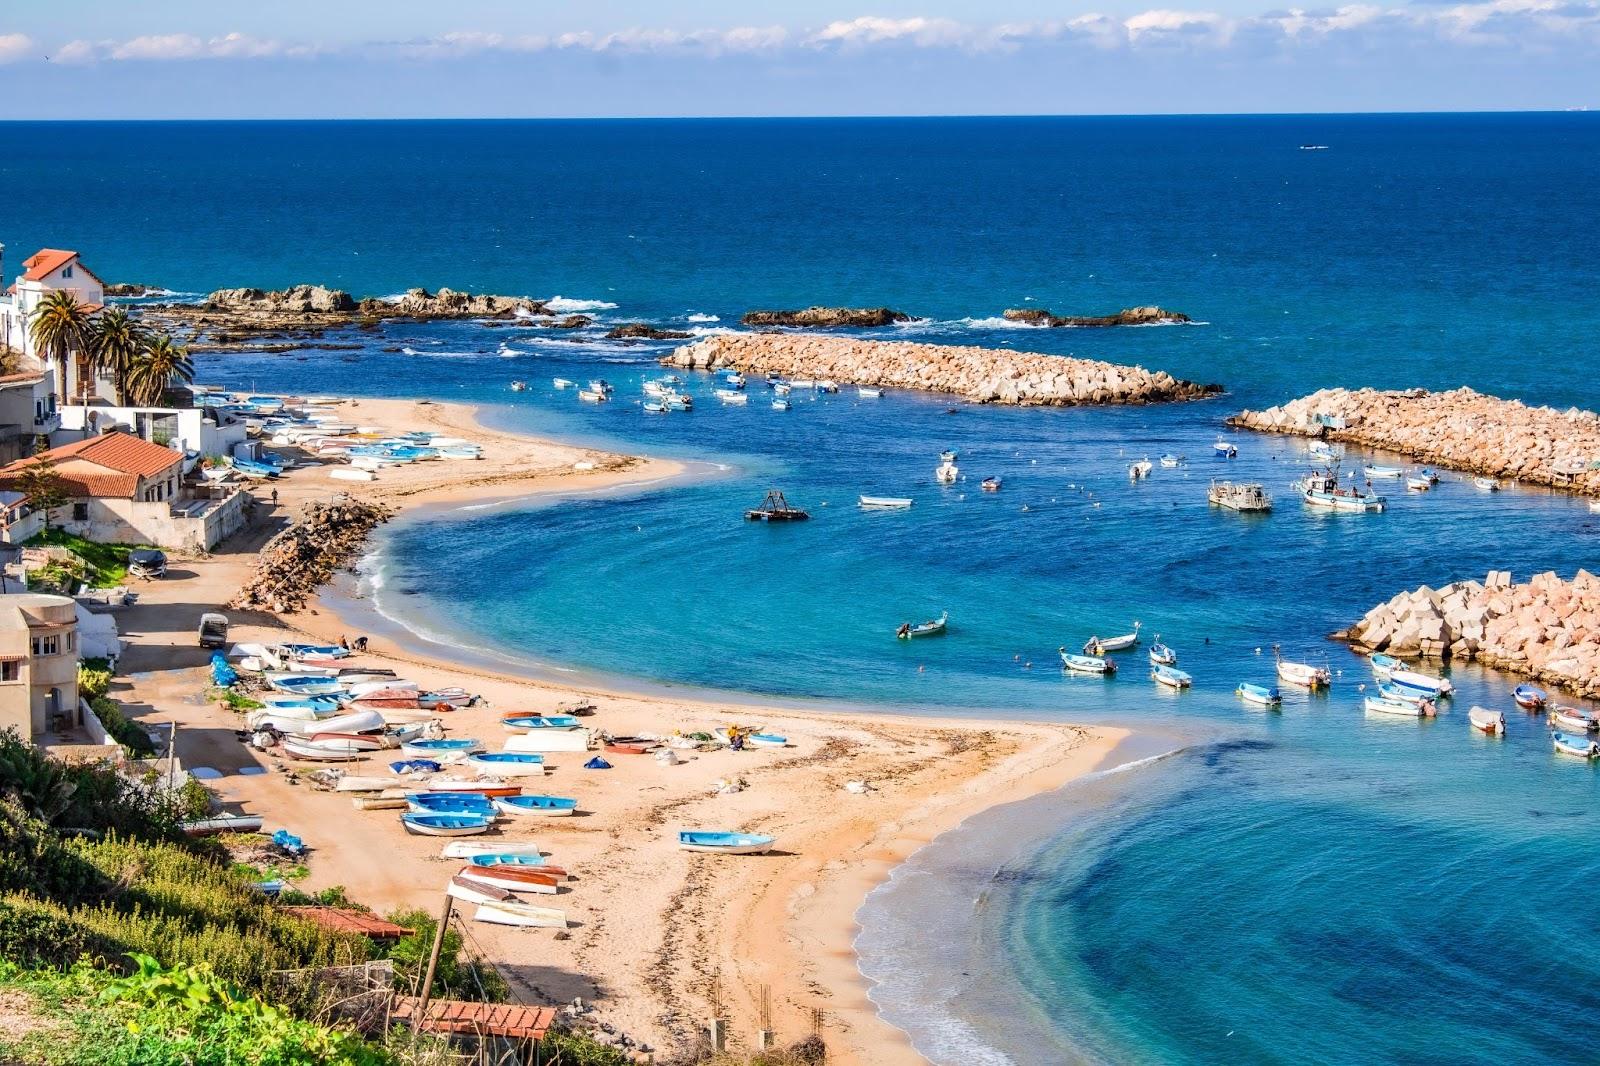 Aerial view of a beach in Algeria